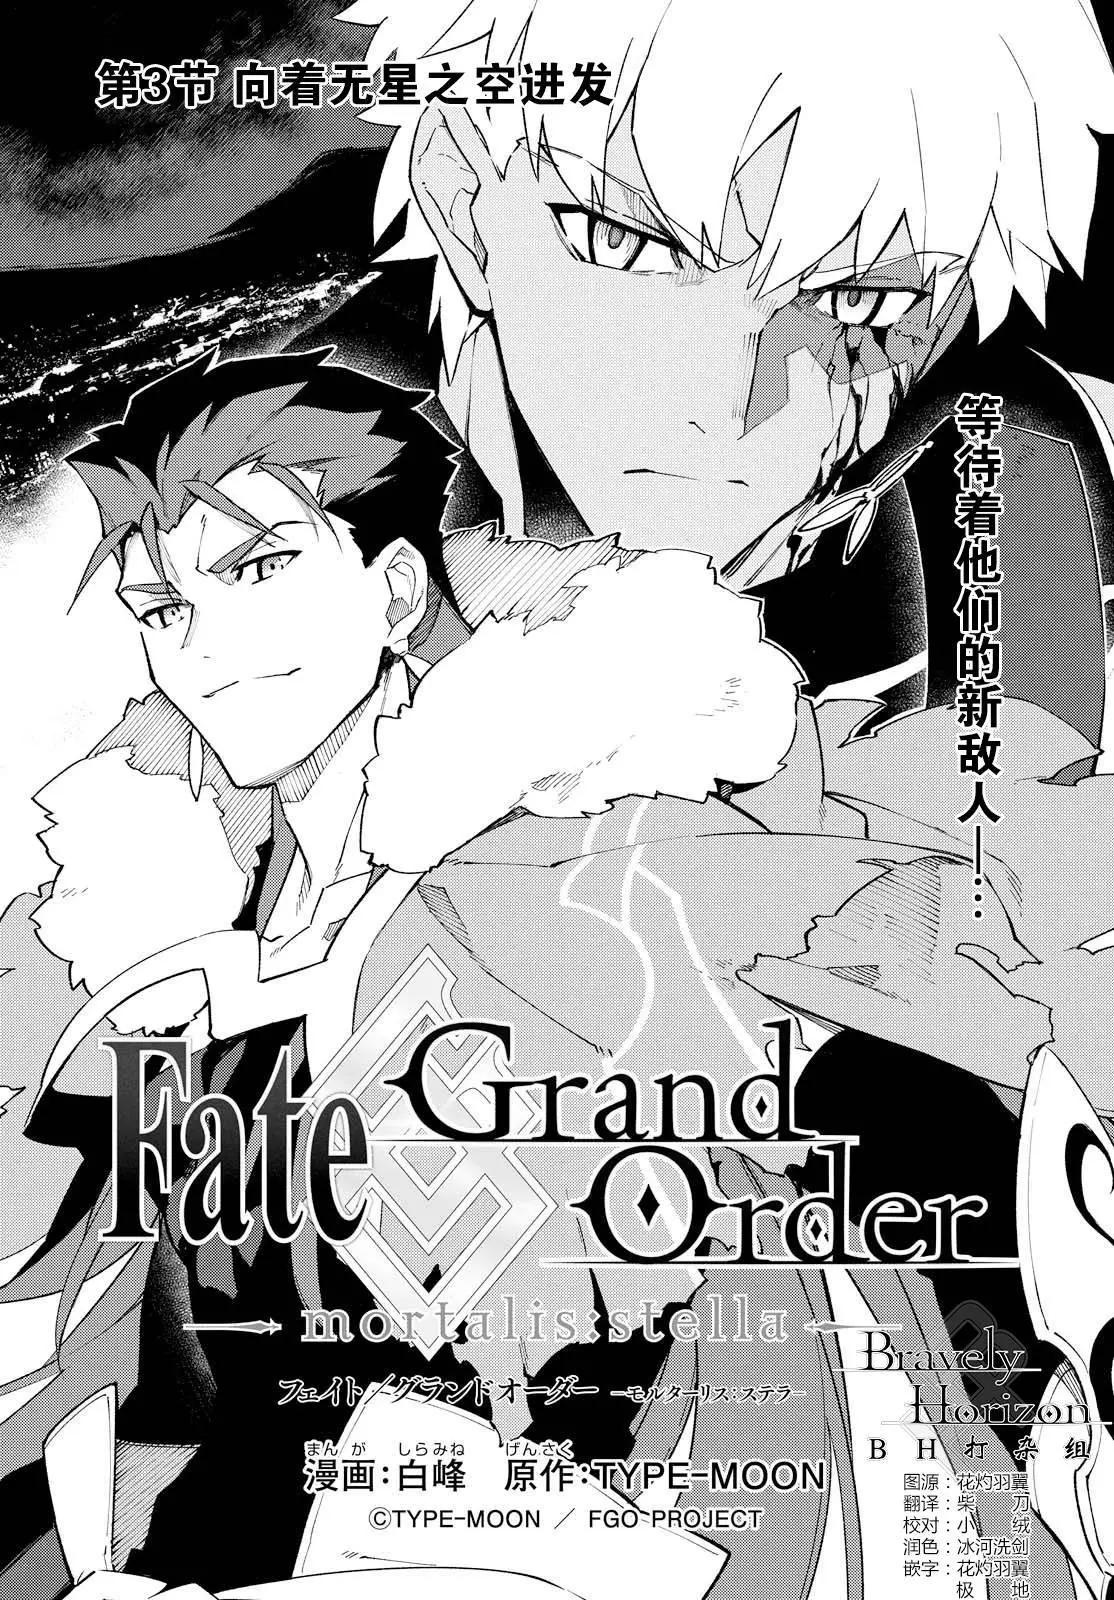 Fate Grand Order-mortalis:stella- - 第03回 - 1